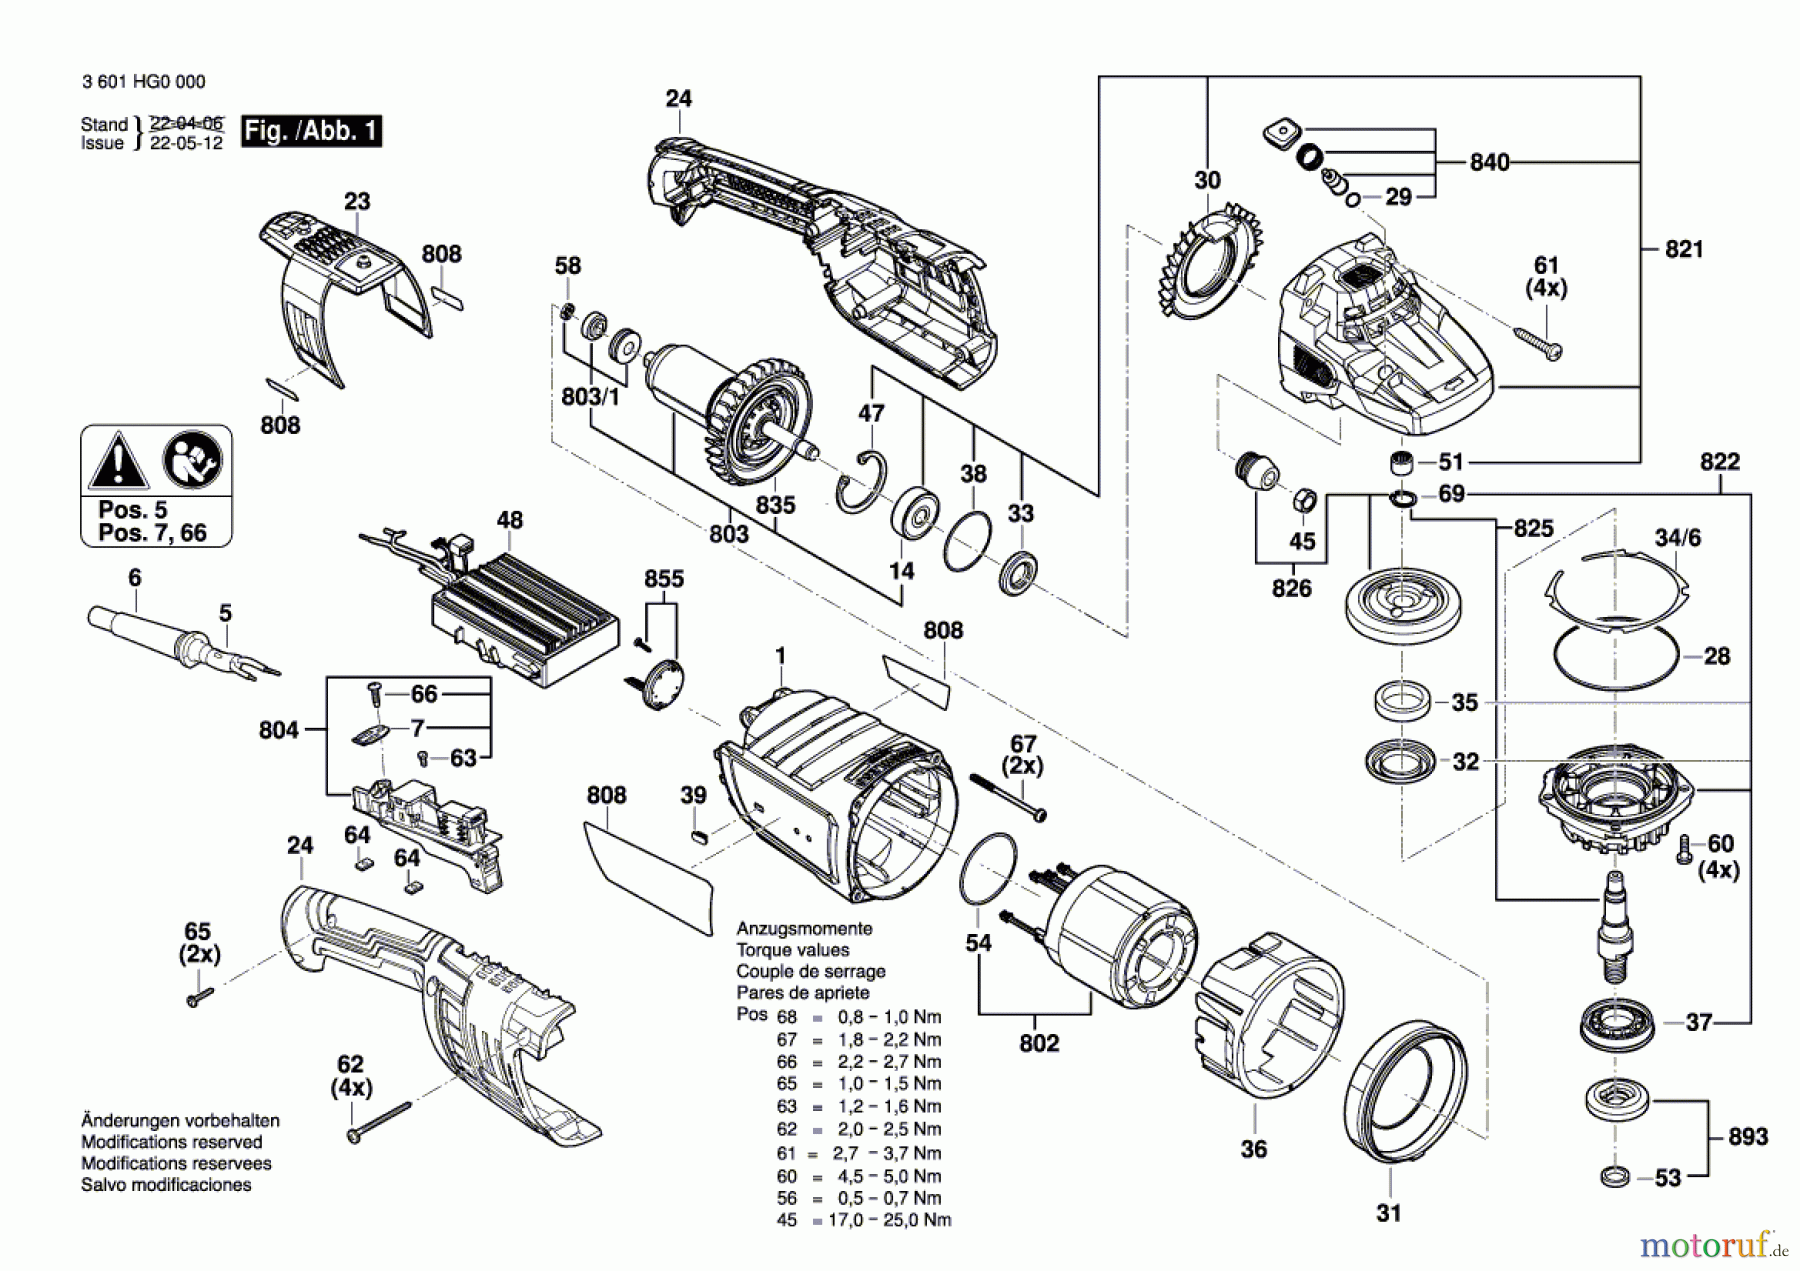  Bosch Werkzeug Winkelschleifer GWS 30-230 PB Seite 1